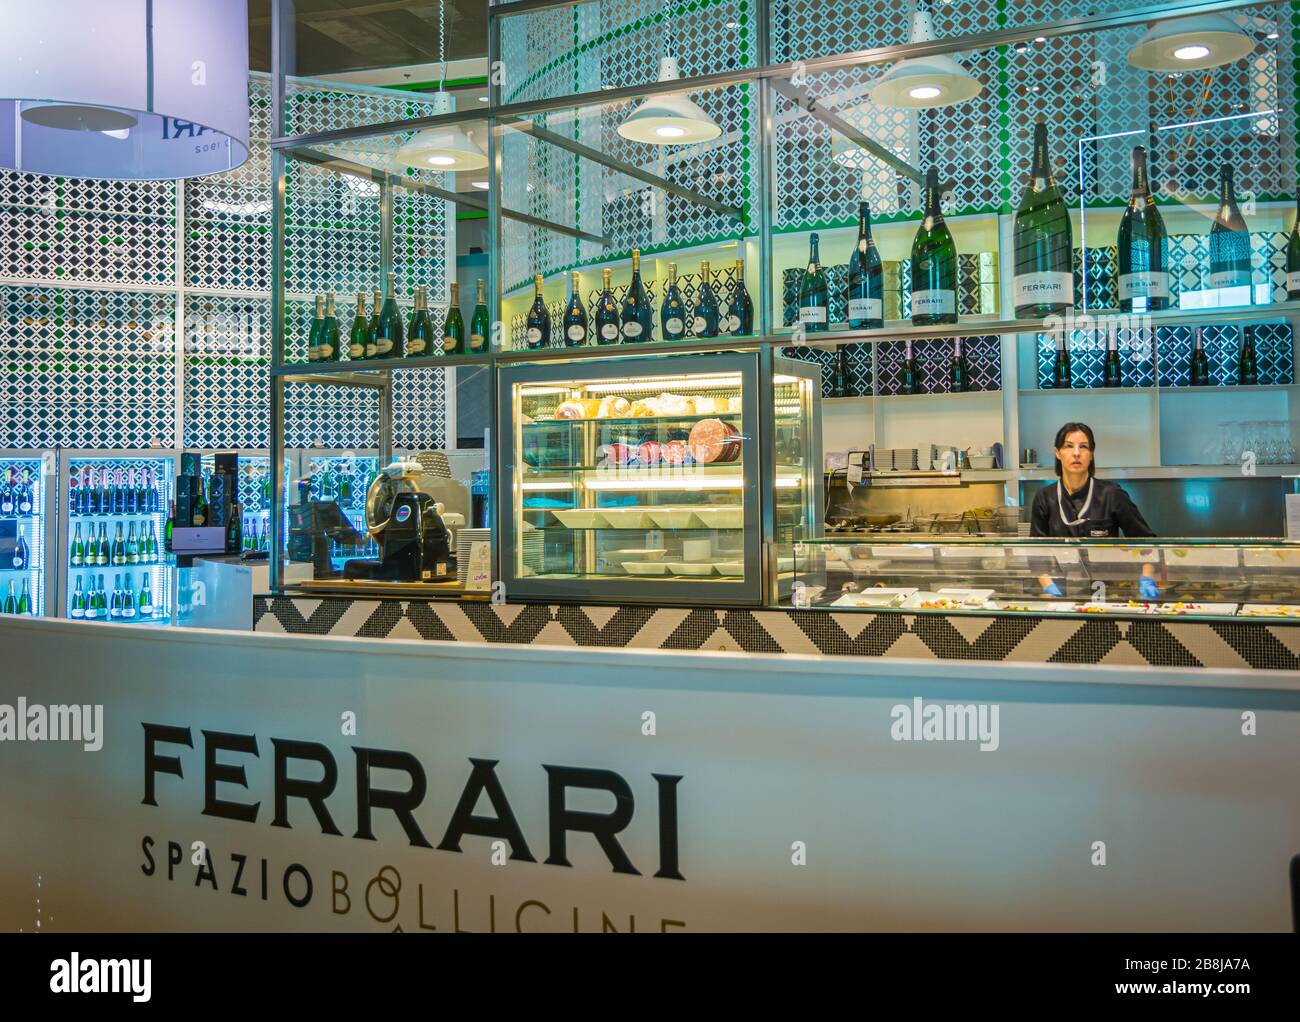 Aeropuerto de Linate, Milán, Lombardía, Italia, Europa - Ferrari Spazio Bollicine se inspira en el deseo de llevar el vino Trento Doc a los símbolos. Foto de stock